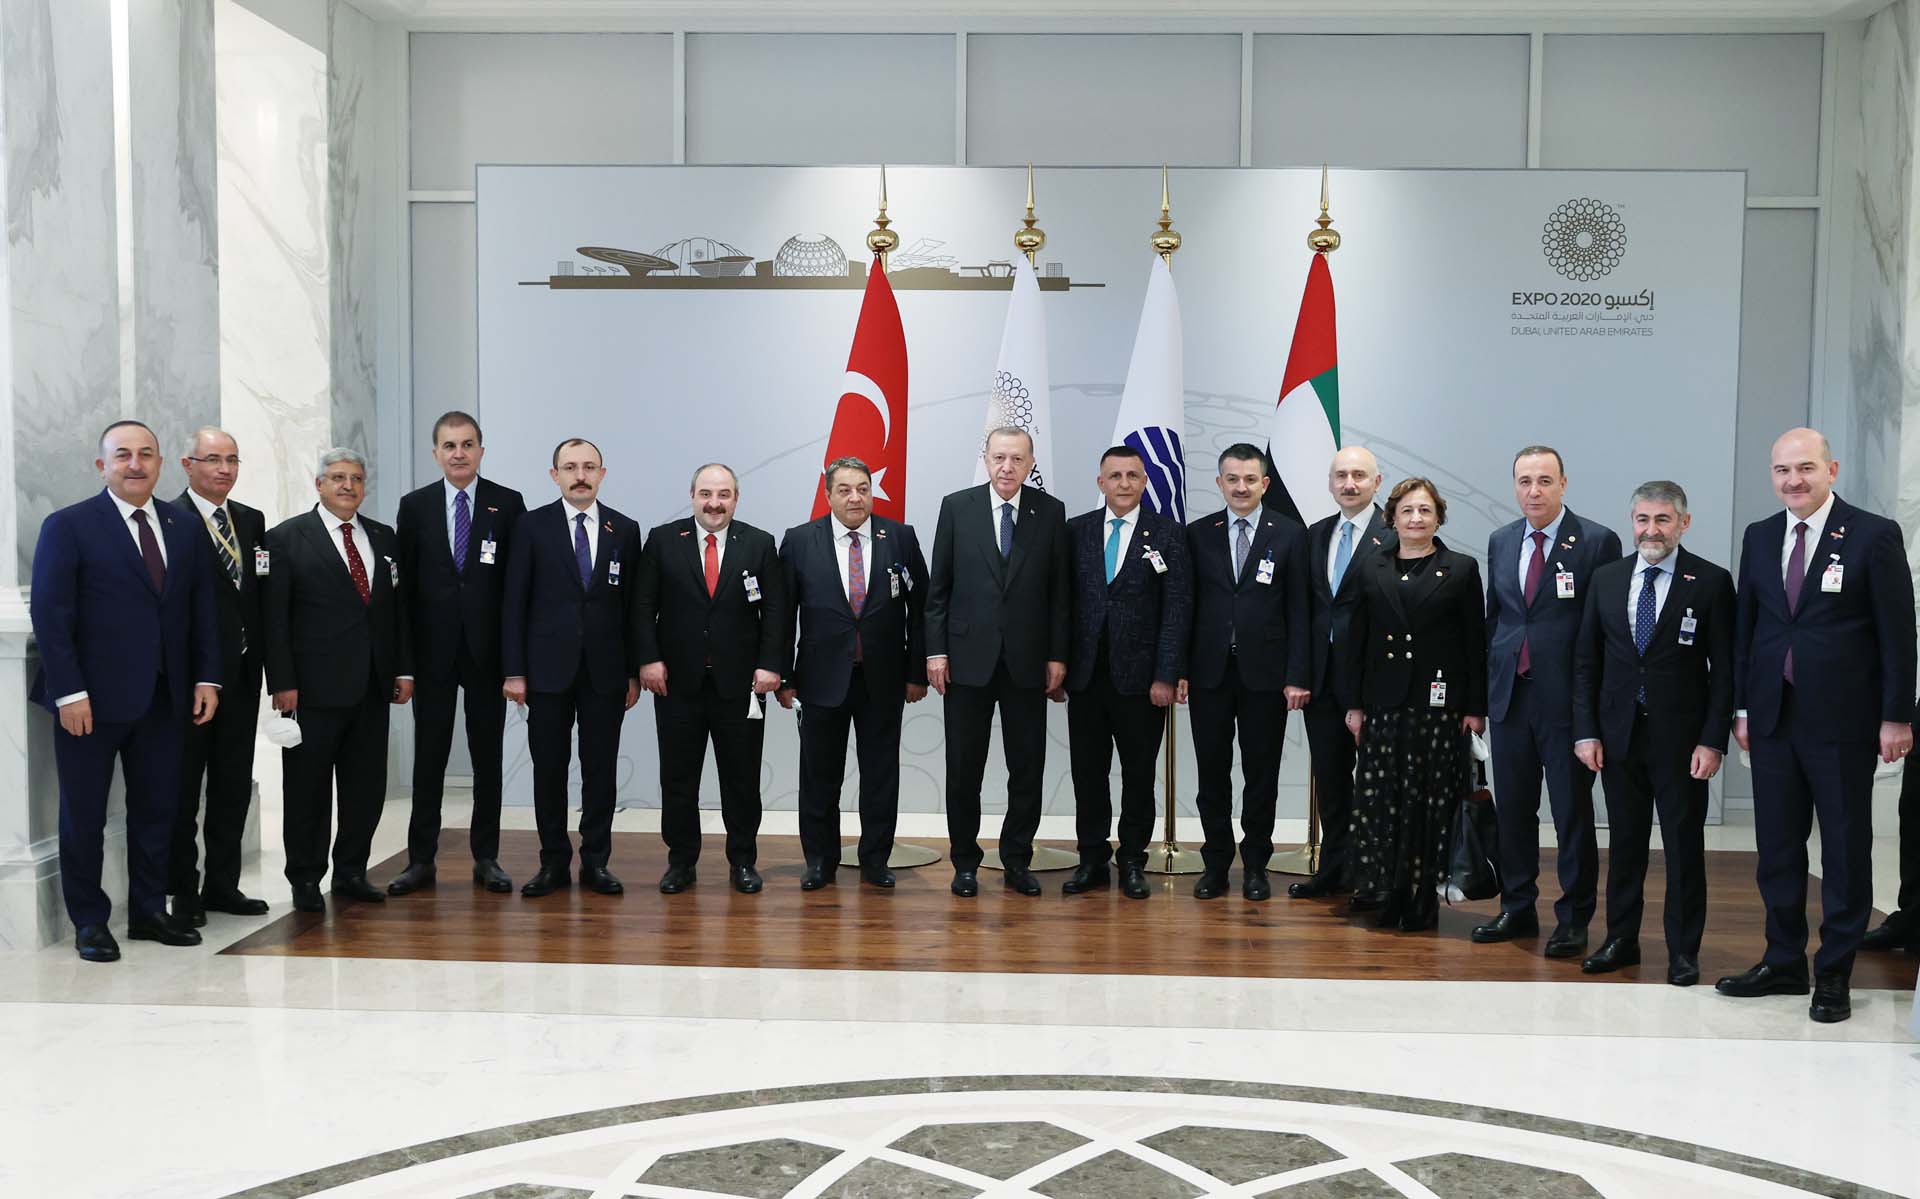 Cumhurbaşkanı Erdoğan, Dubai EXPO 2020 Türkiye Ulusal Günü programında konuştu: Olumlu gelecek için müşterek noktalarda buluşmalıyız